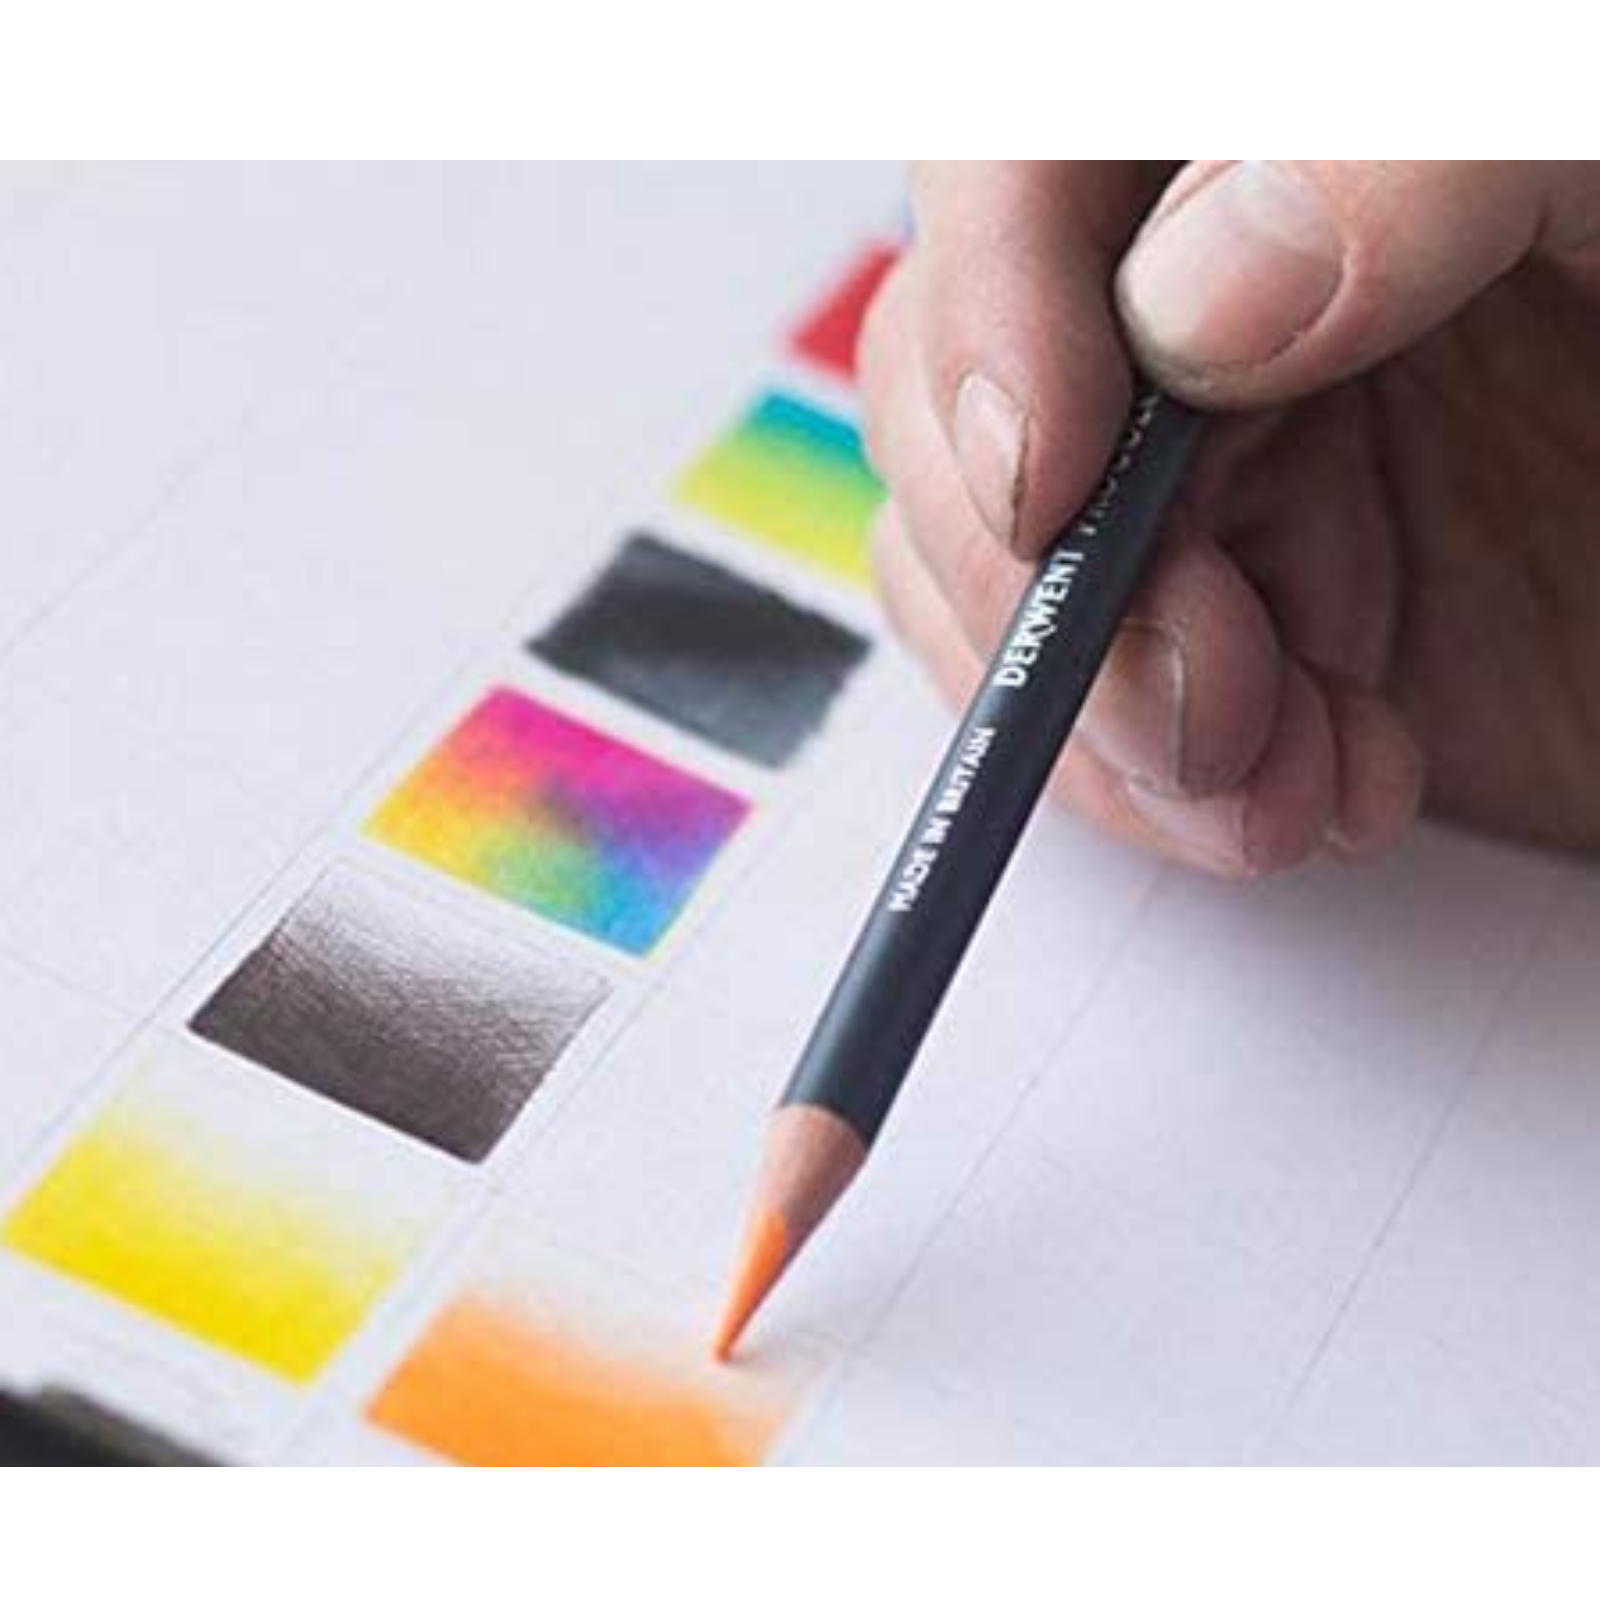 Derwent 24 Watercolour Pencils, Colouring, Blending, Layering, Drawing - easy blending & layering